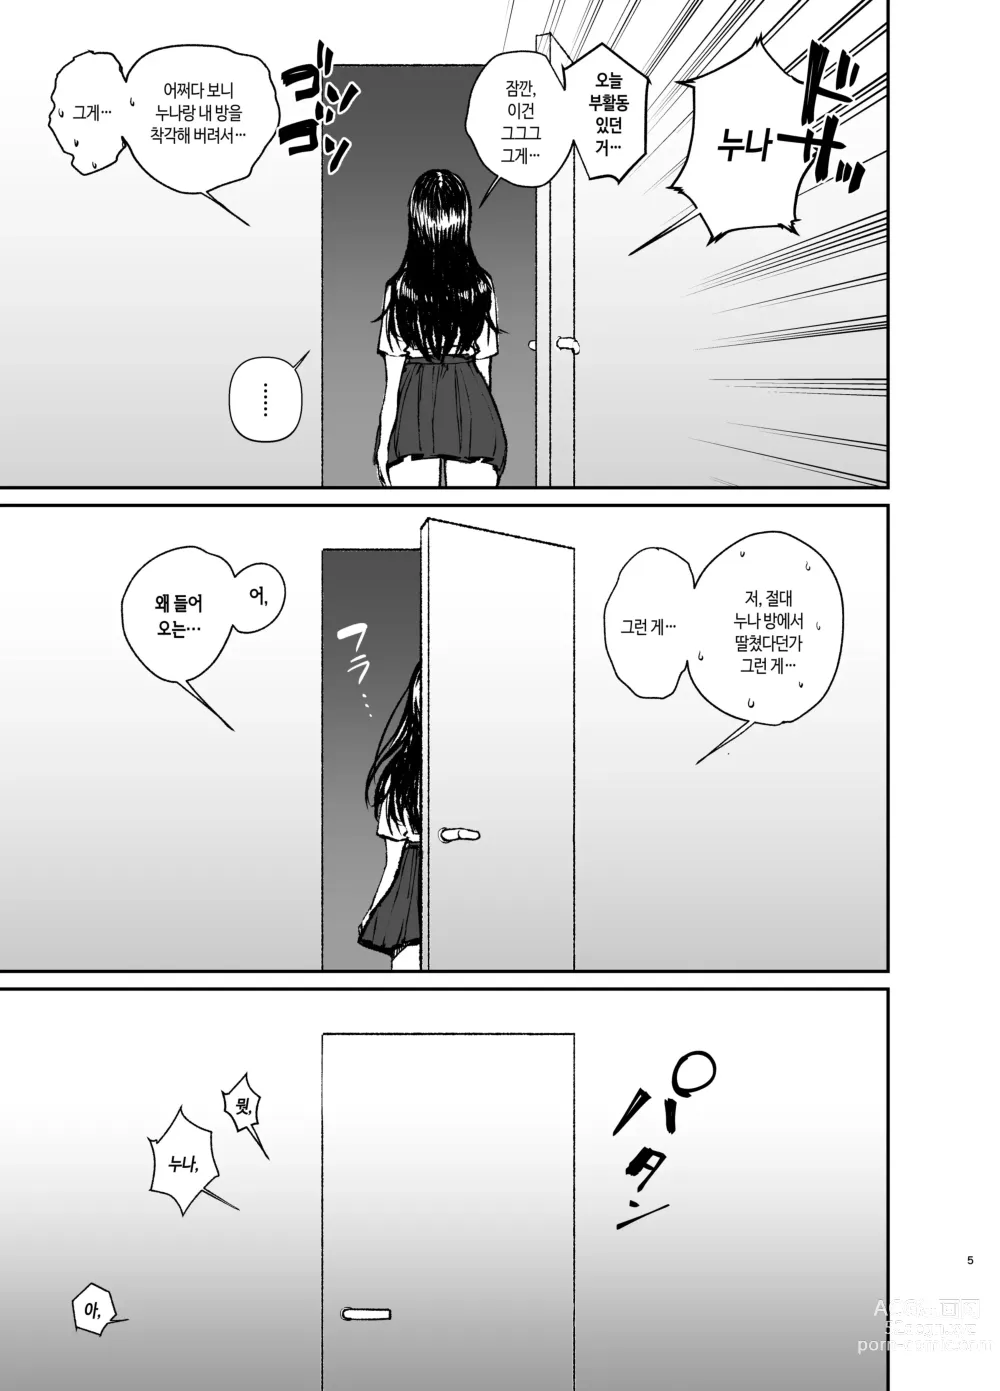 Page 5 of doujinshi 누나로 딸치는 동생과 자위 마려운 누나가 조우한 결과